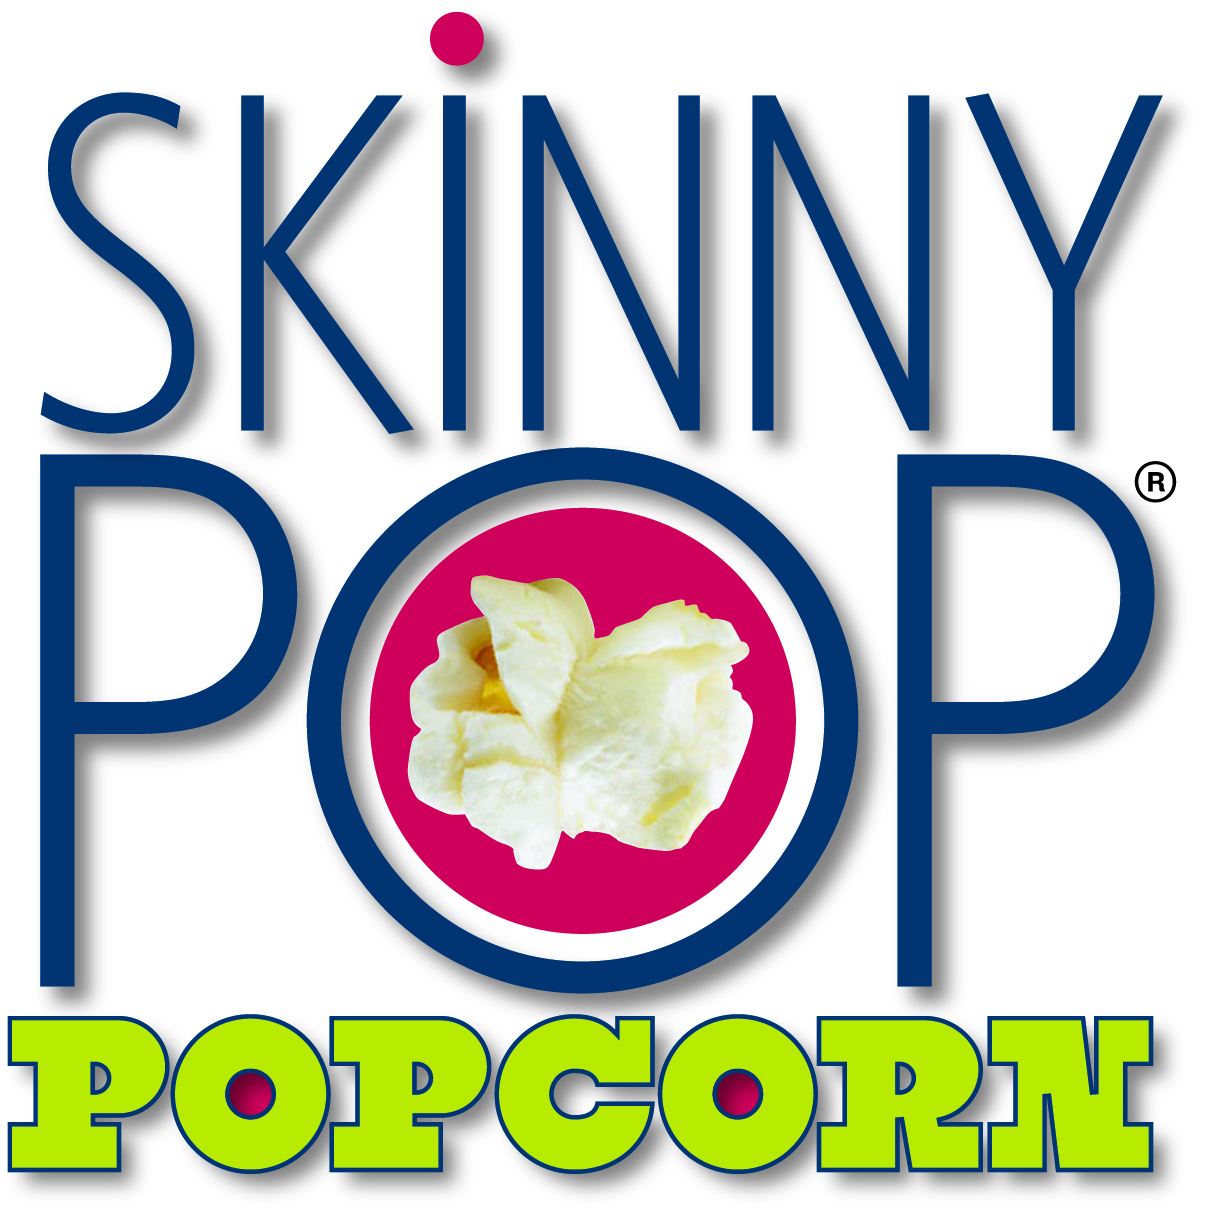 Skinny Pop Popcorn_Logo_CMYK 300dpi JPEG.JPG